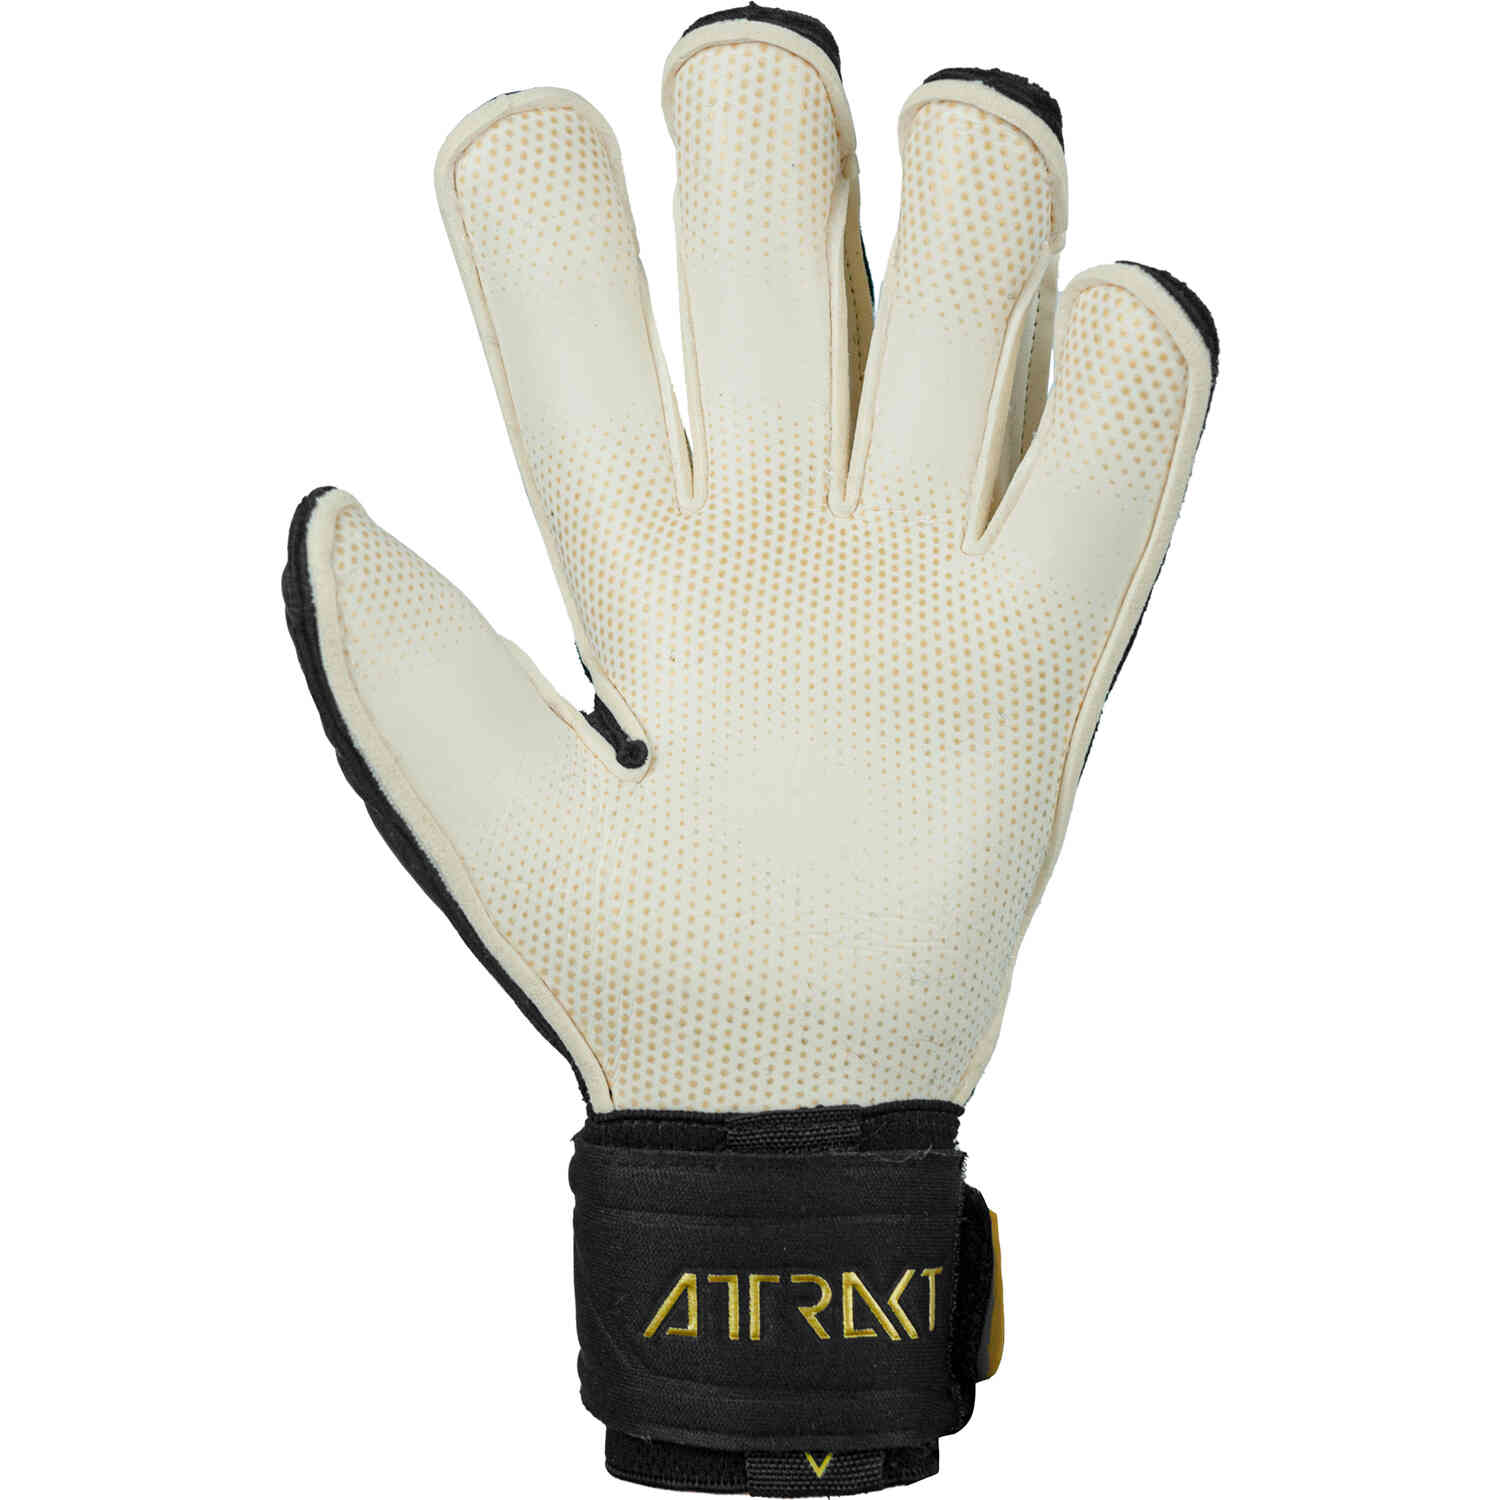 Reusch Attrakt Gold X Glueprint Goalkeeper Gloves – Black & Gold